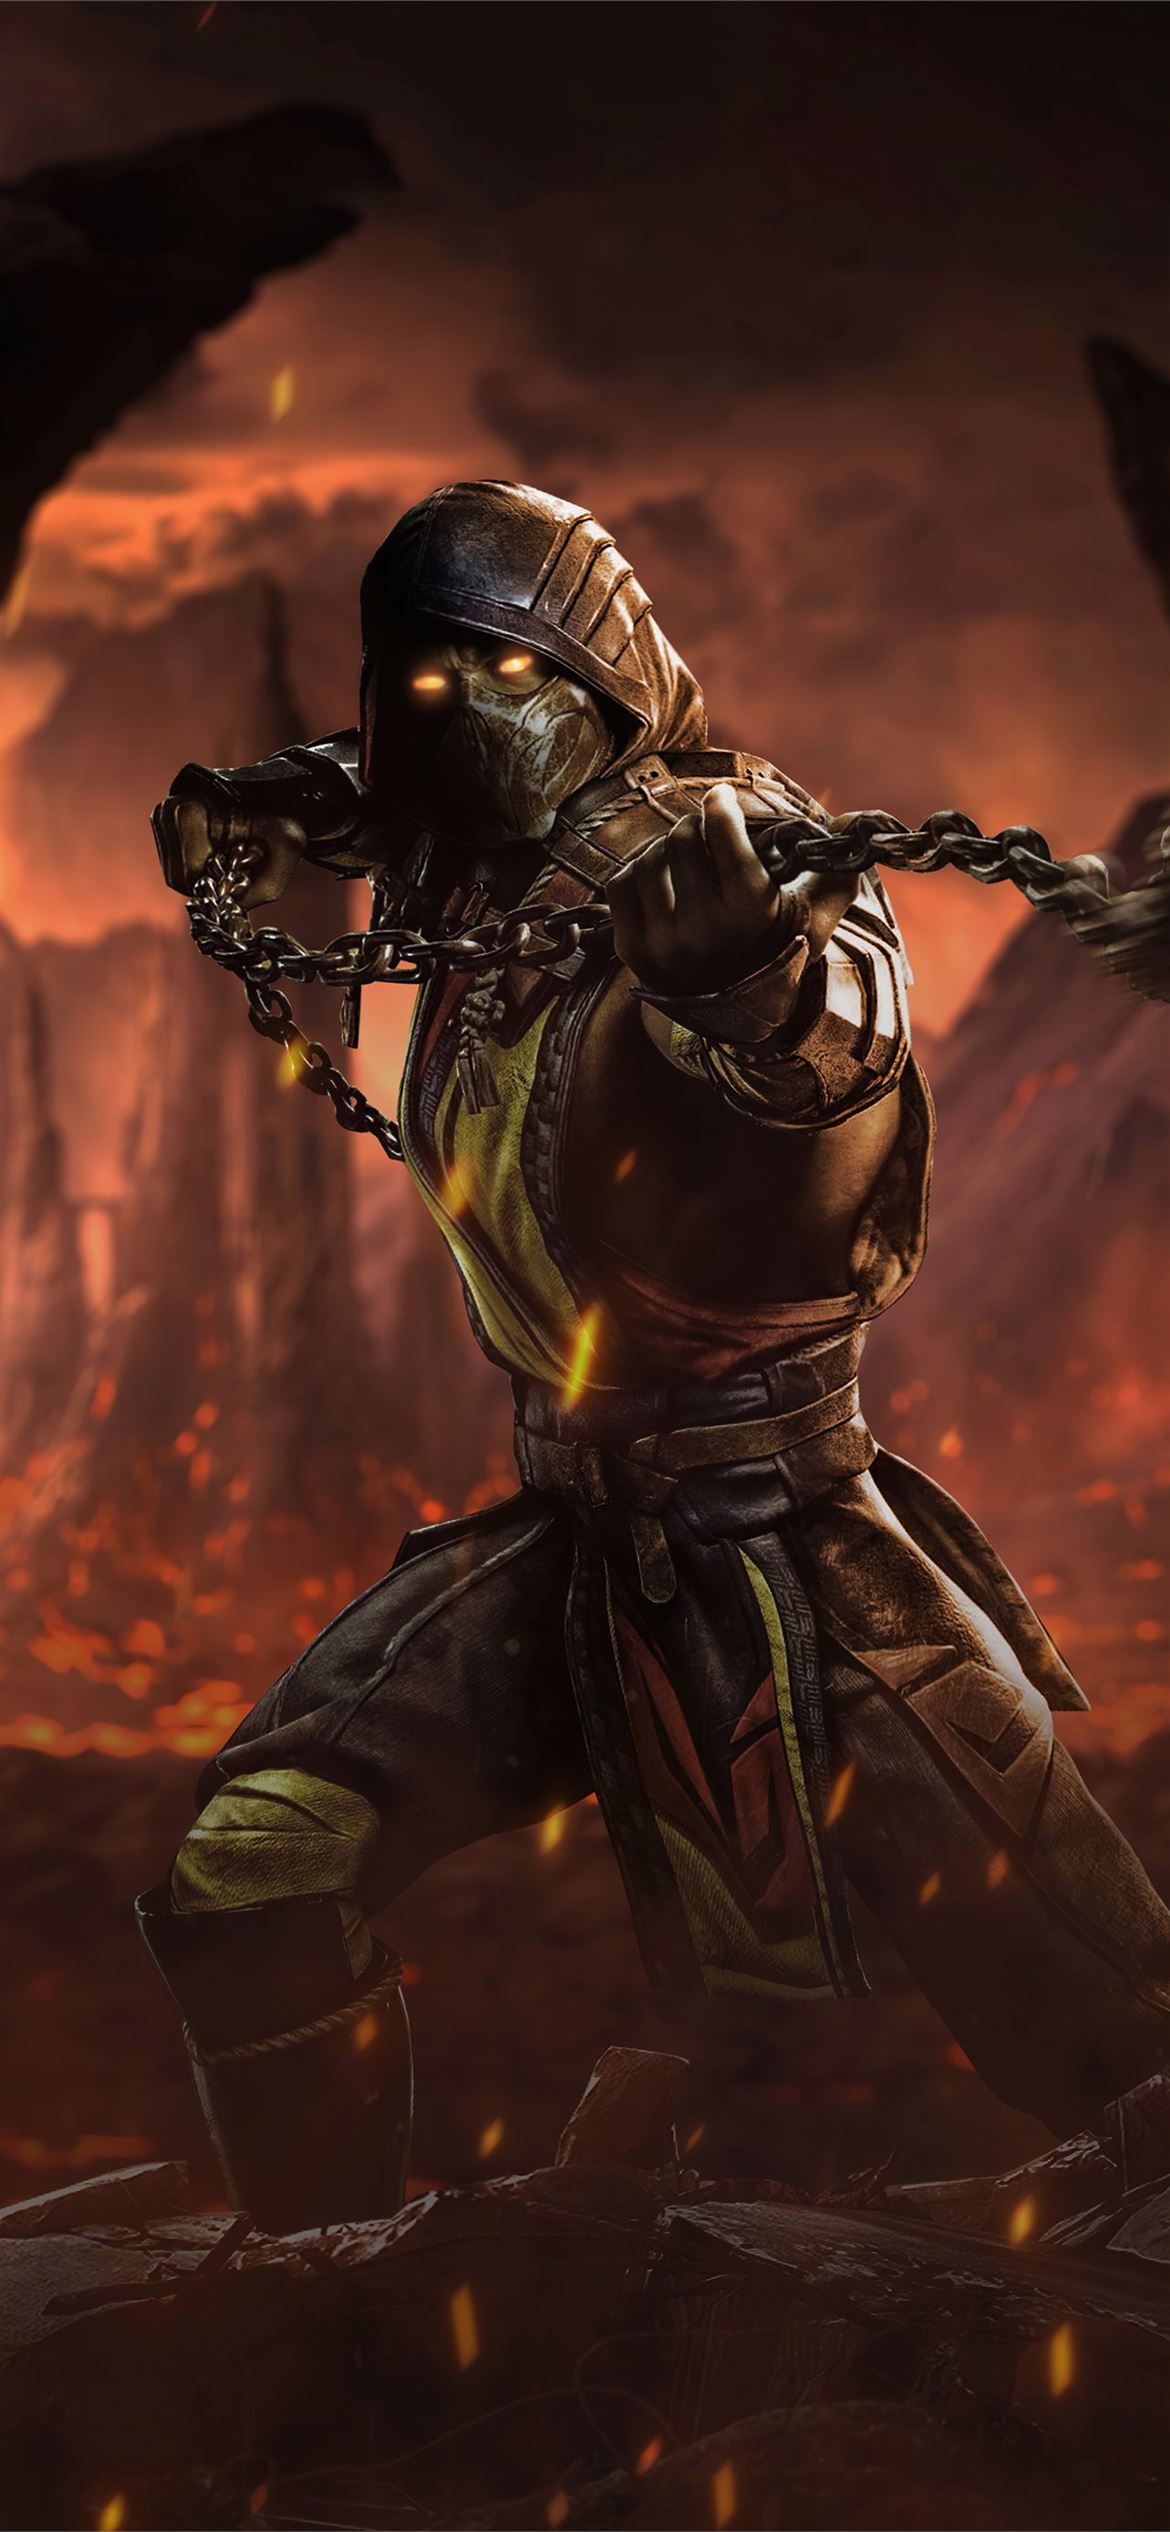 67+] Mortal Kombat Wallpaper Scorpion - WallpaperSafari